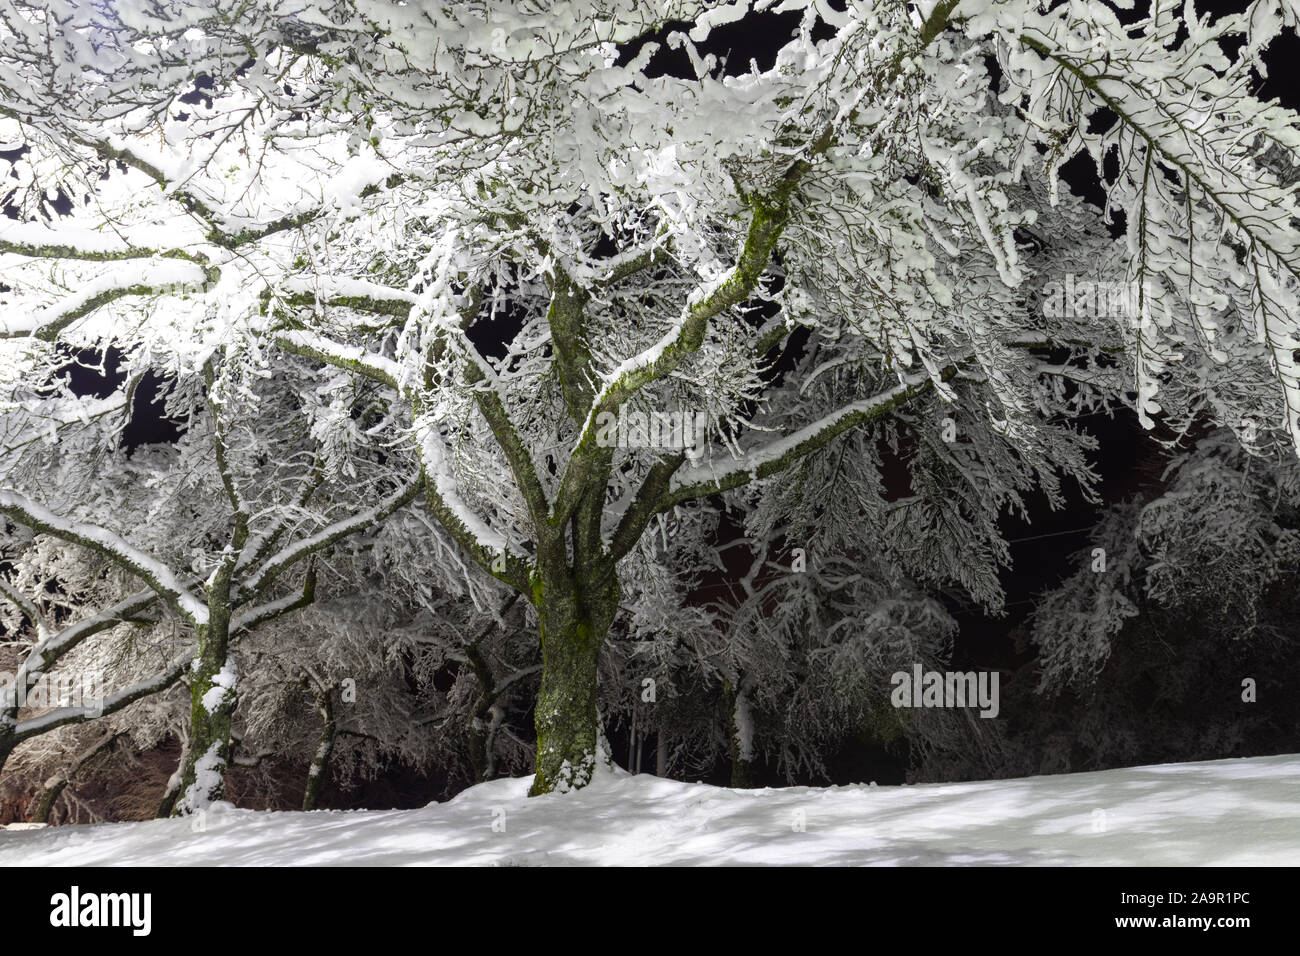 Les arbres couverts de neige, ciel noir et brillant lanterne. Photo de nuit. Neige dans la nuit. Photo idéal qui apporte jusqu'à l'esprit de vacances. Banque D'Images